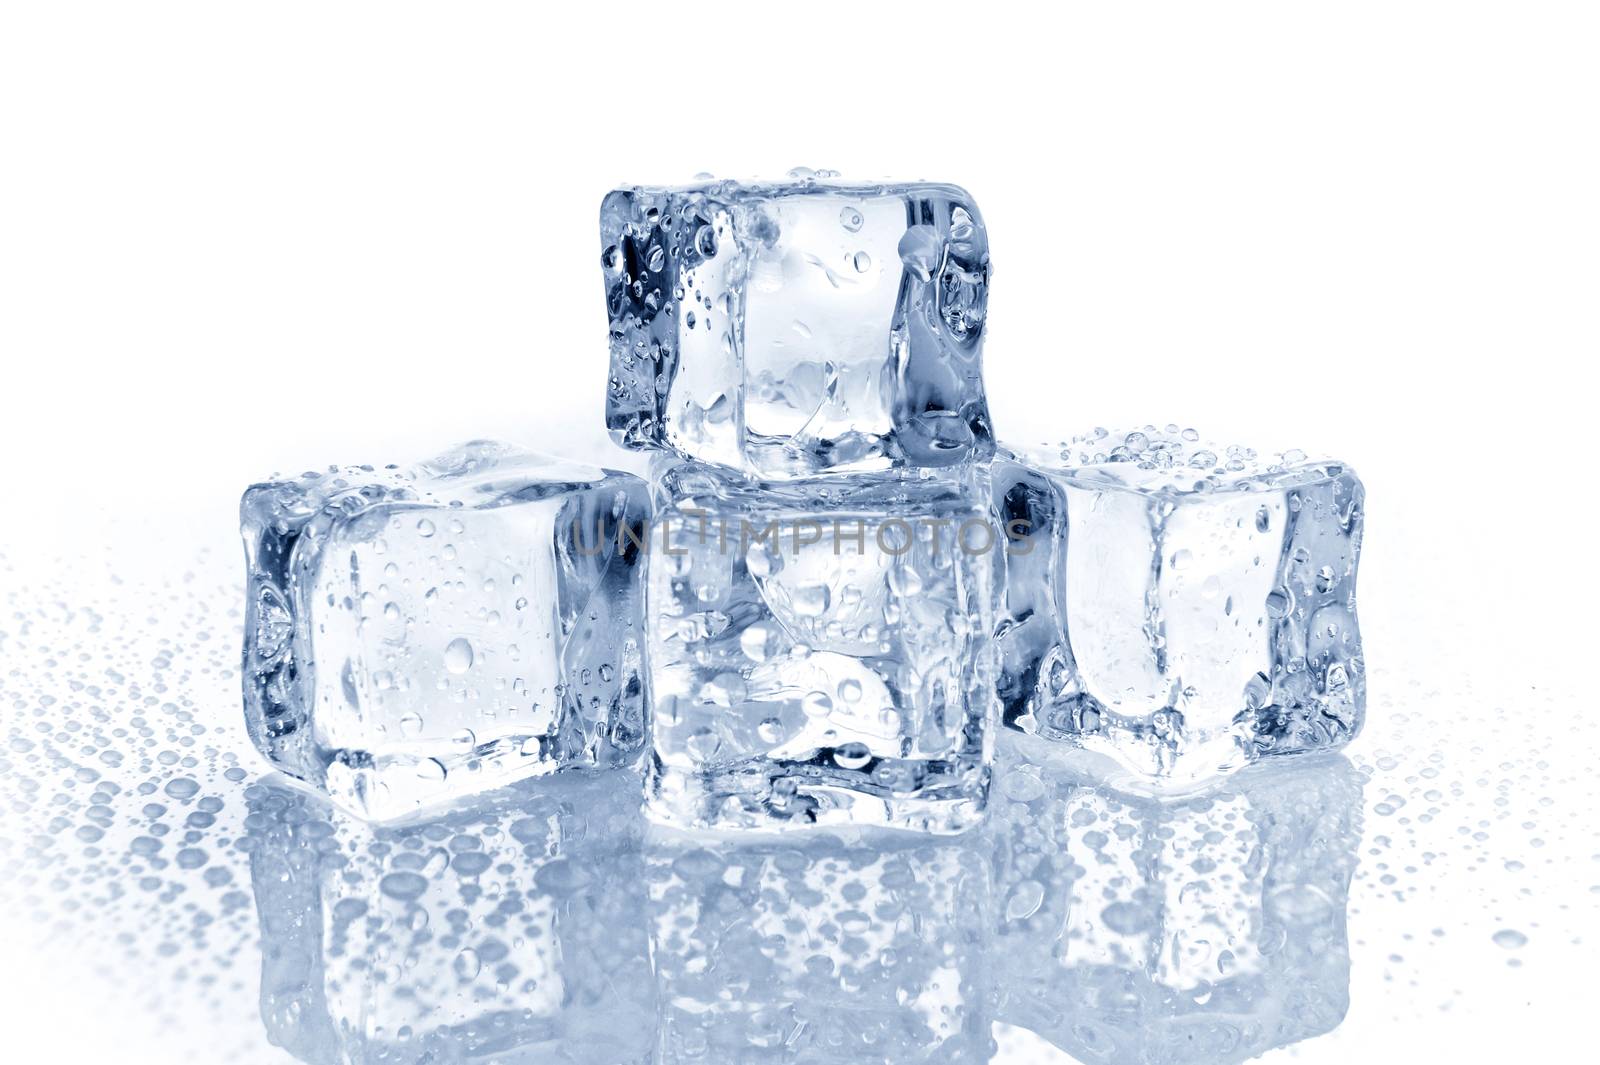 Ice cube by byrdyak